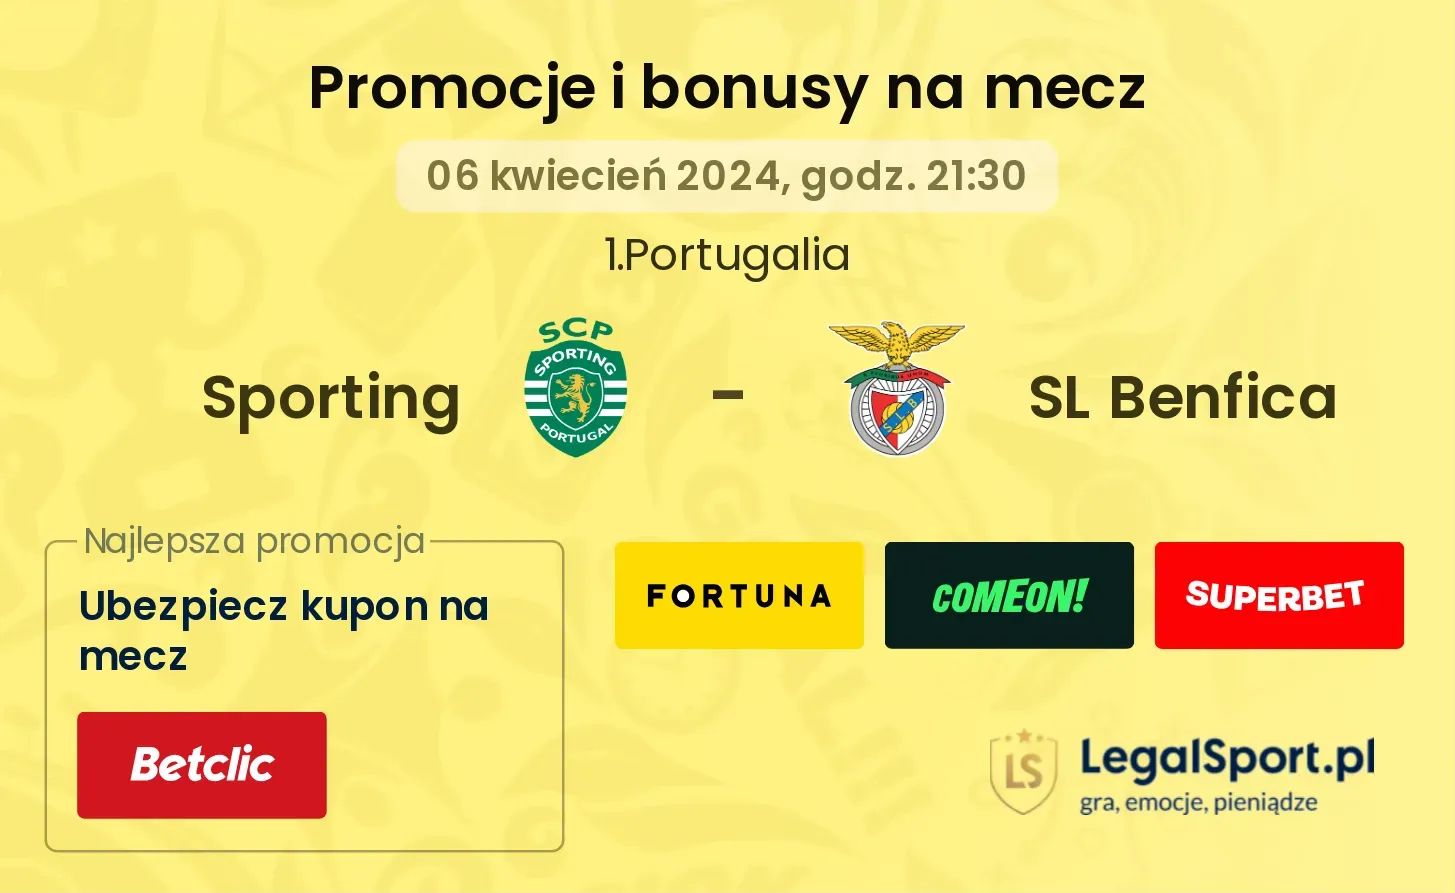 Sporting - SL Benfica promocje bonusy na mecz